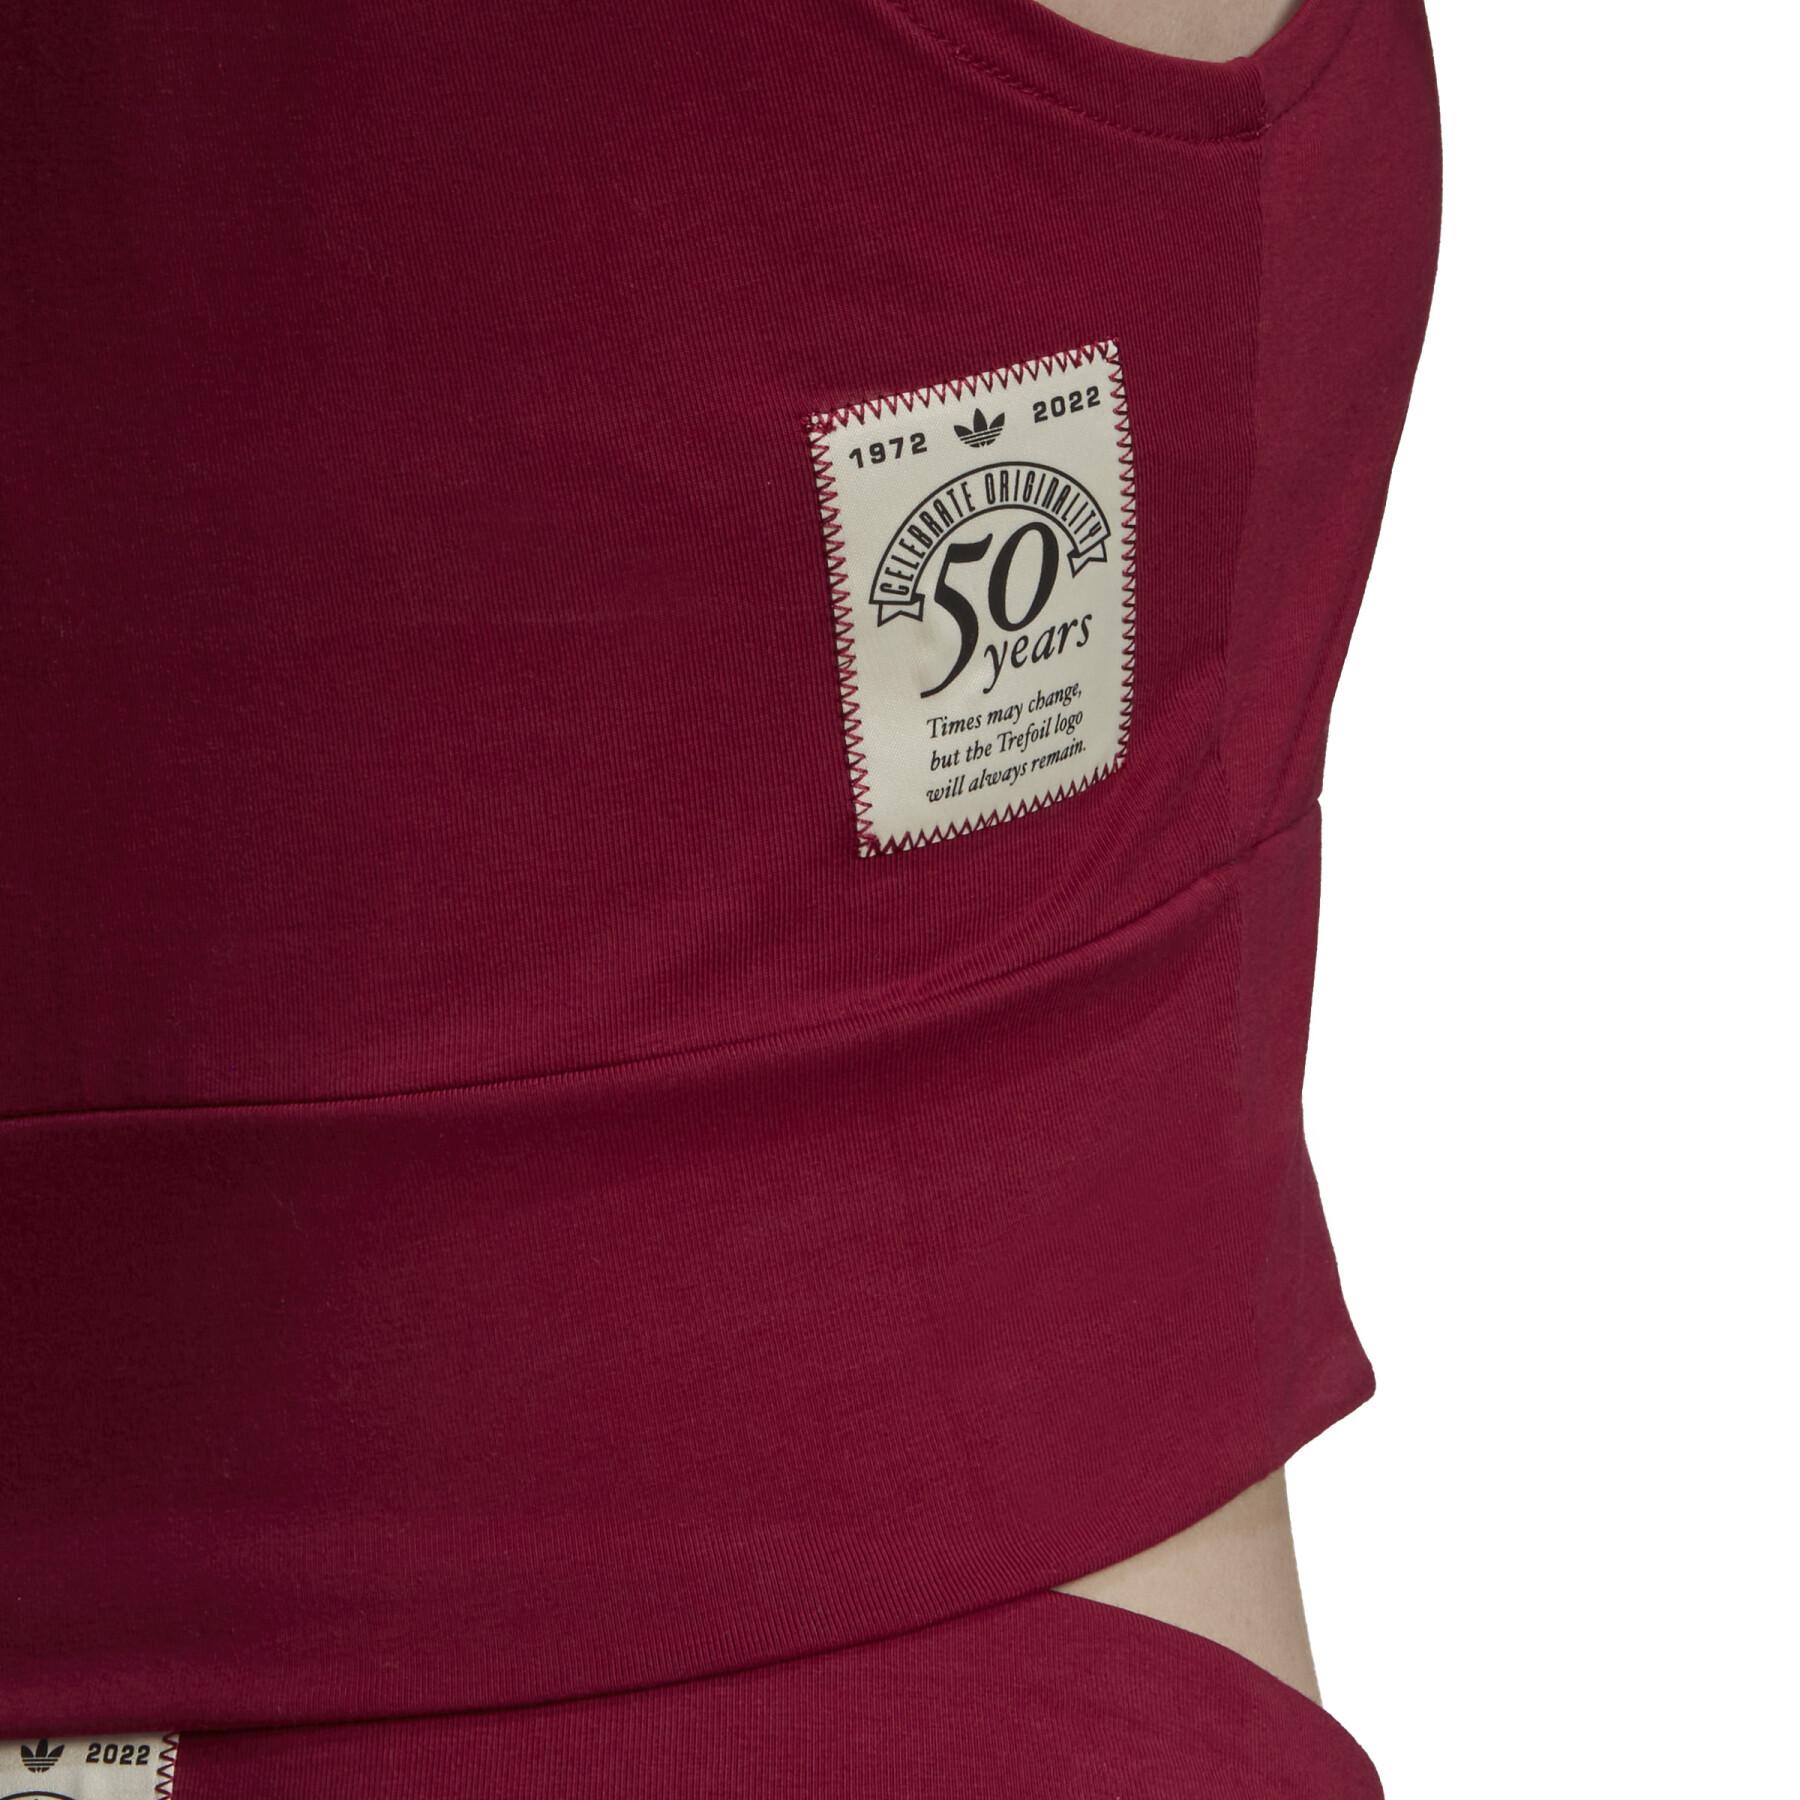 Camiseta de tirantes para mujer adidas Originals Class Of 72